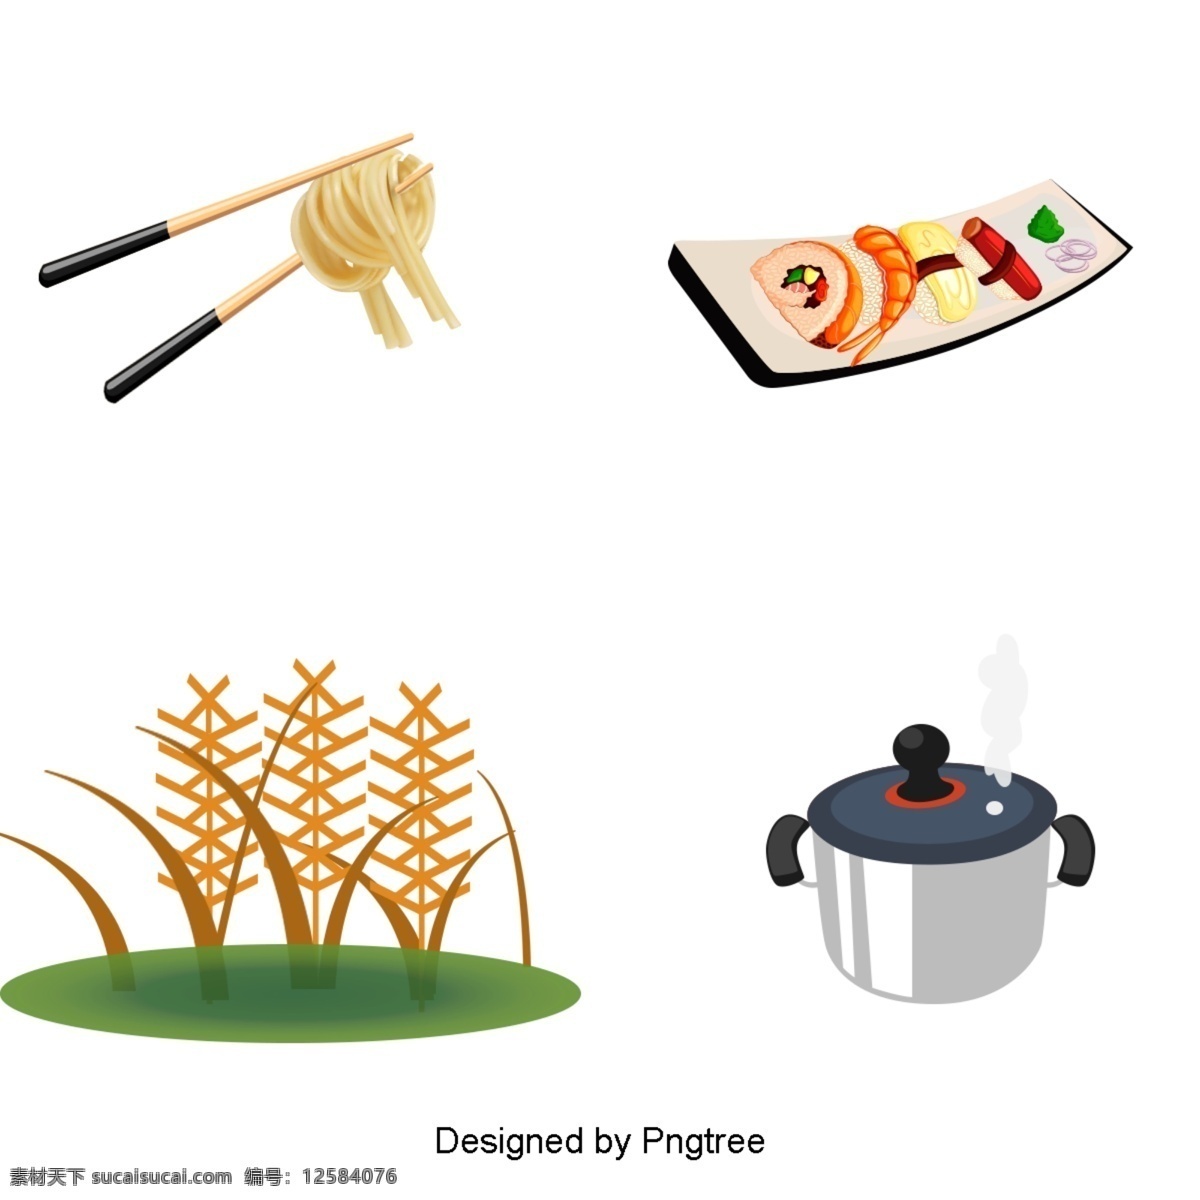 食品 烹饪 材料 载体 工具 稻谷 寿司 大米 筷子 表面 锅